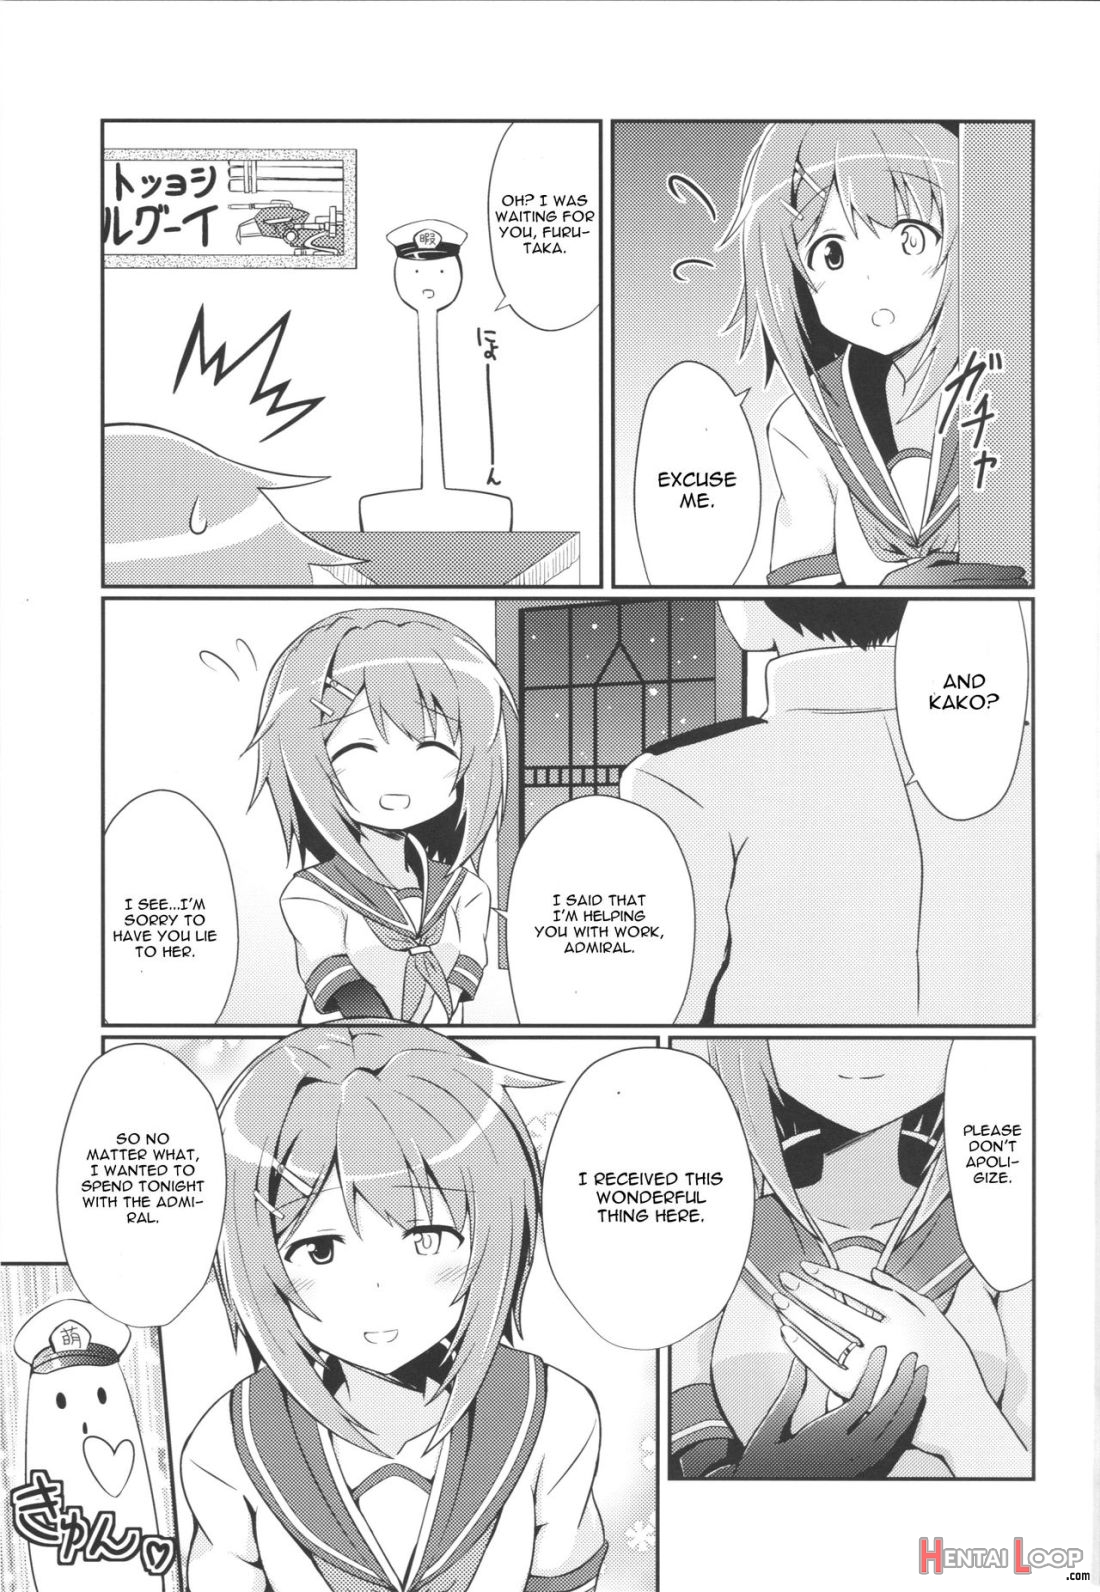 Furutaka To Sugosu Yoru page 4